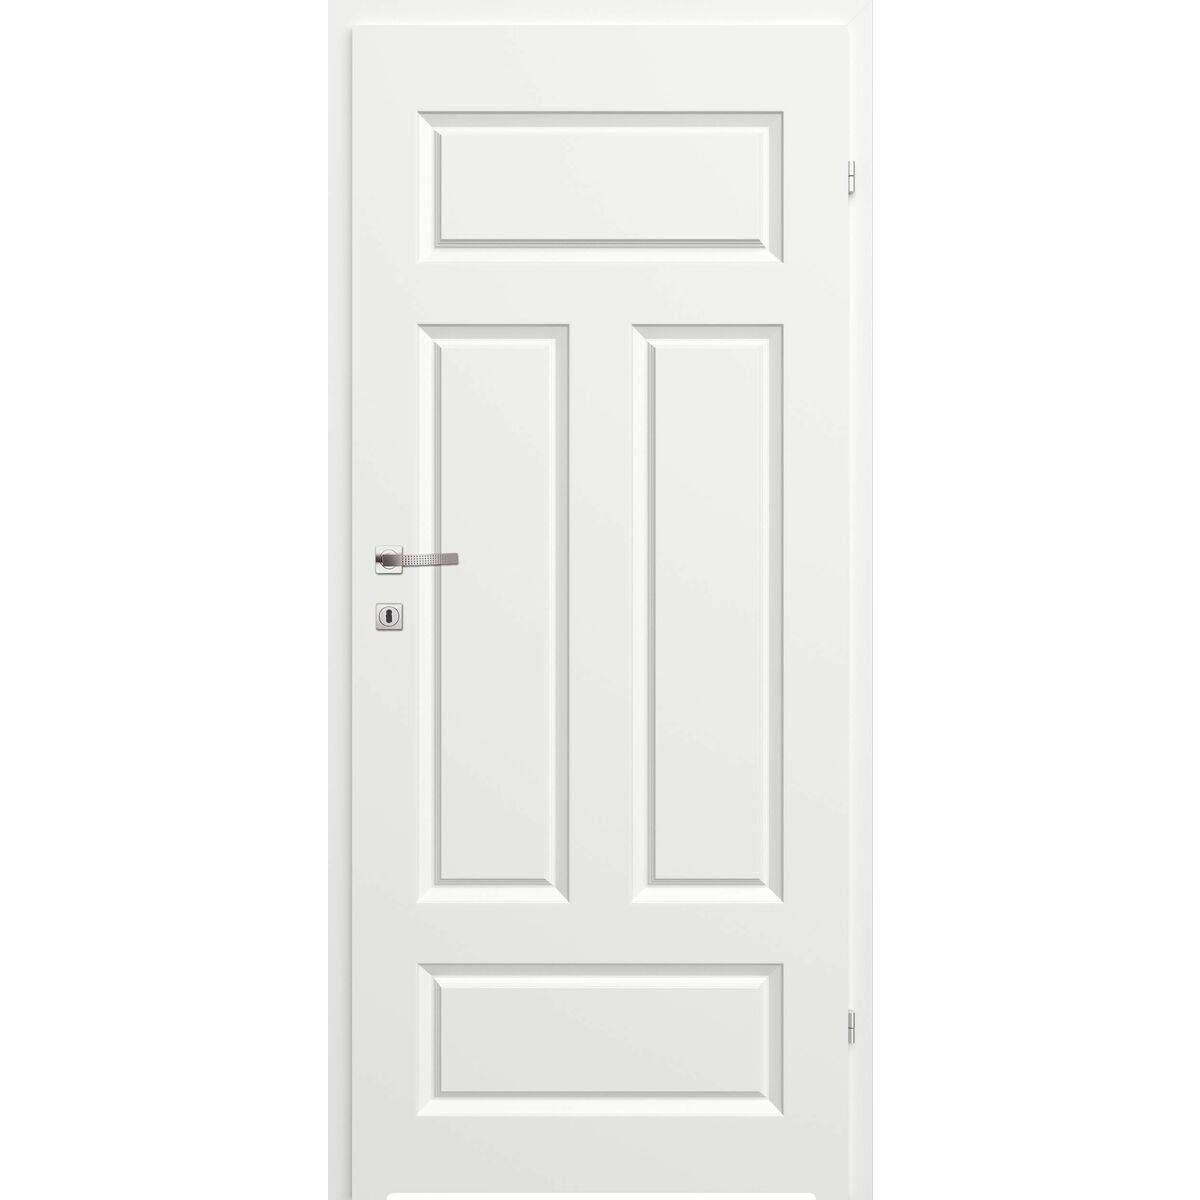 Drzwi wewnętrzne łazienkowe pełne z podcięciem wentylacyjnym Morano I Białe 70 Prawe Classen